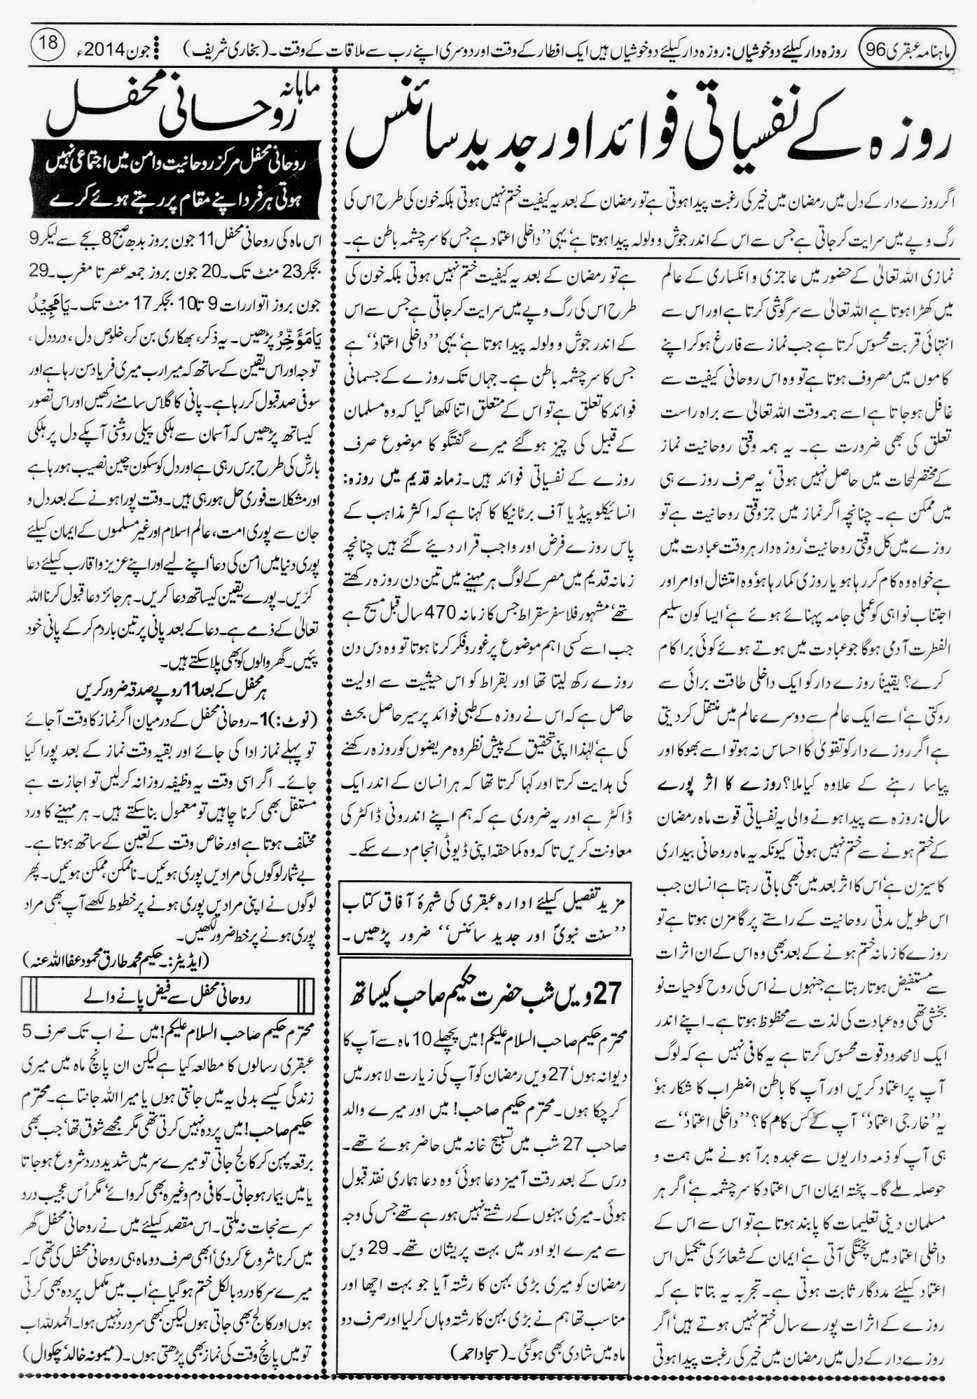 ubqari june 2014 page 18